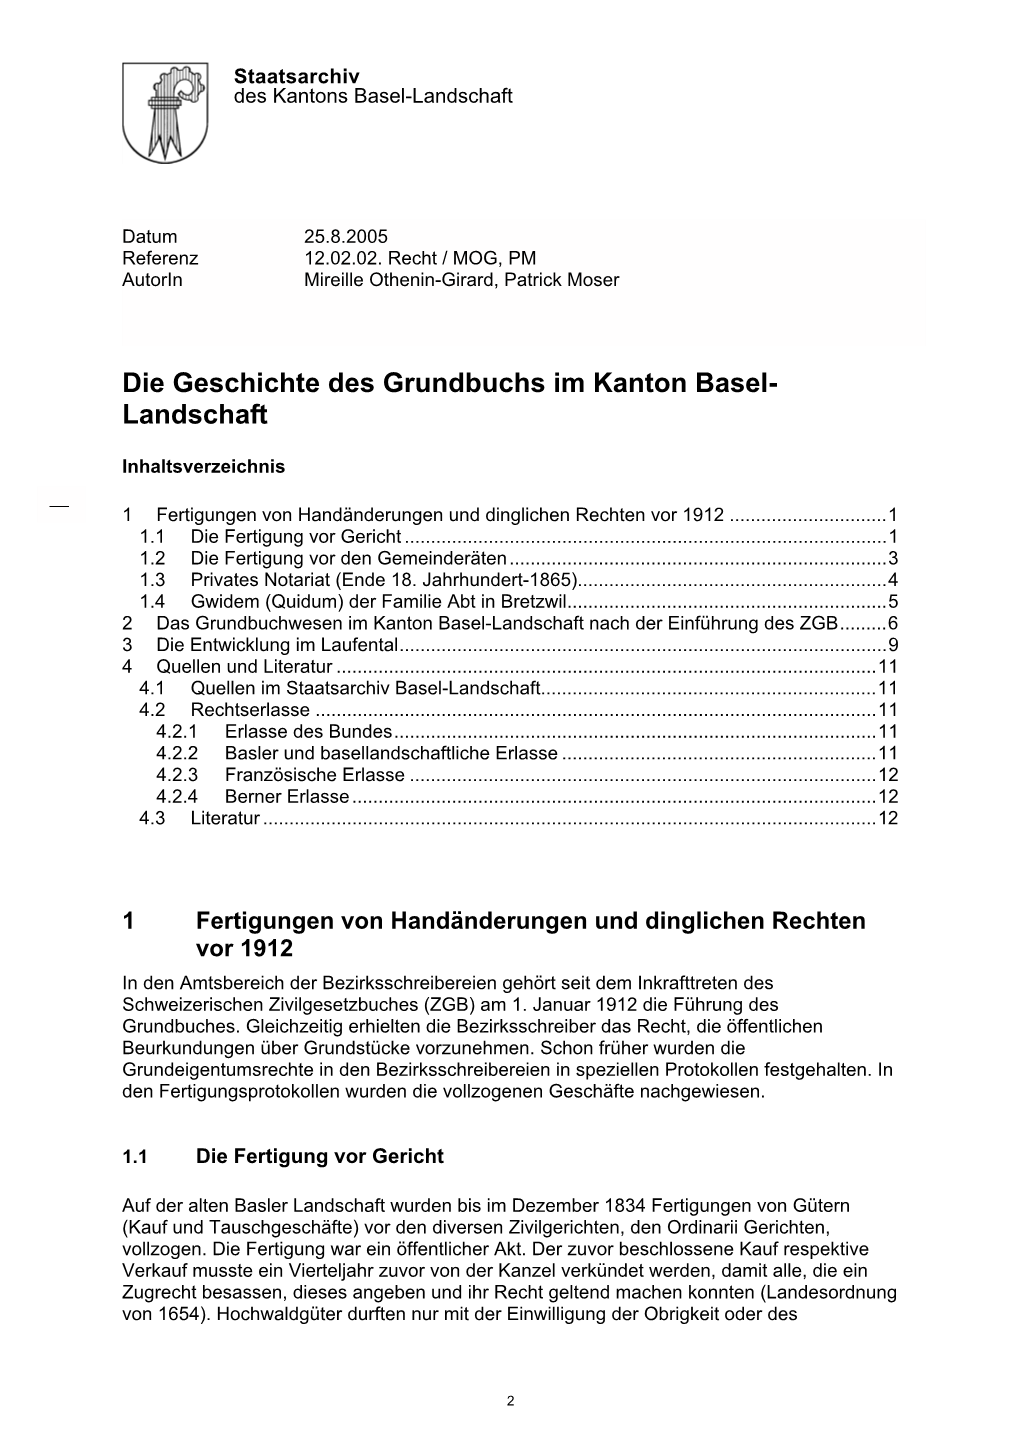 Die Geschichte Des Grundbuchs Im Kanton Basel- Landschaft